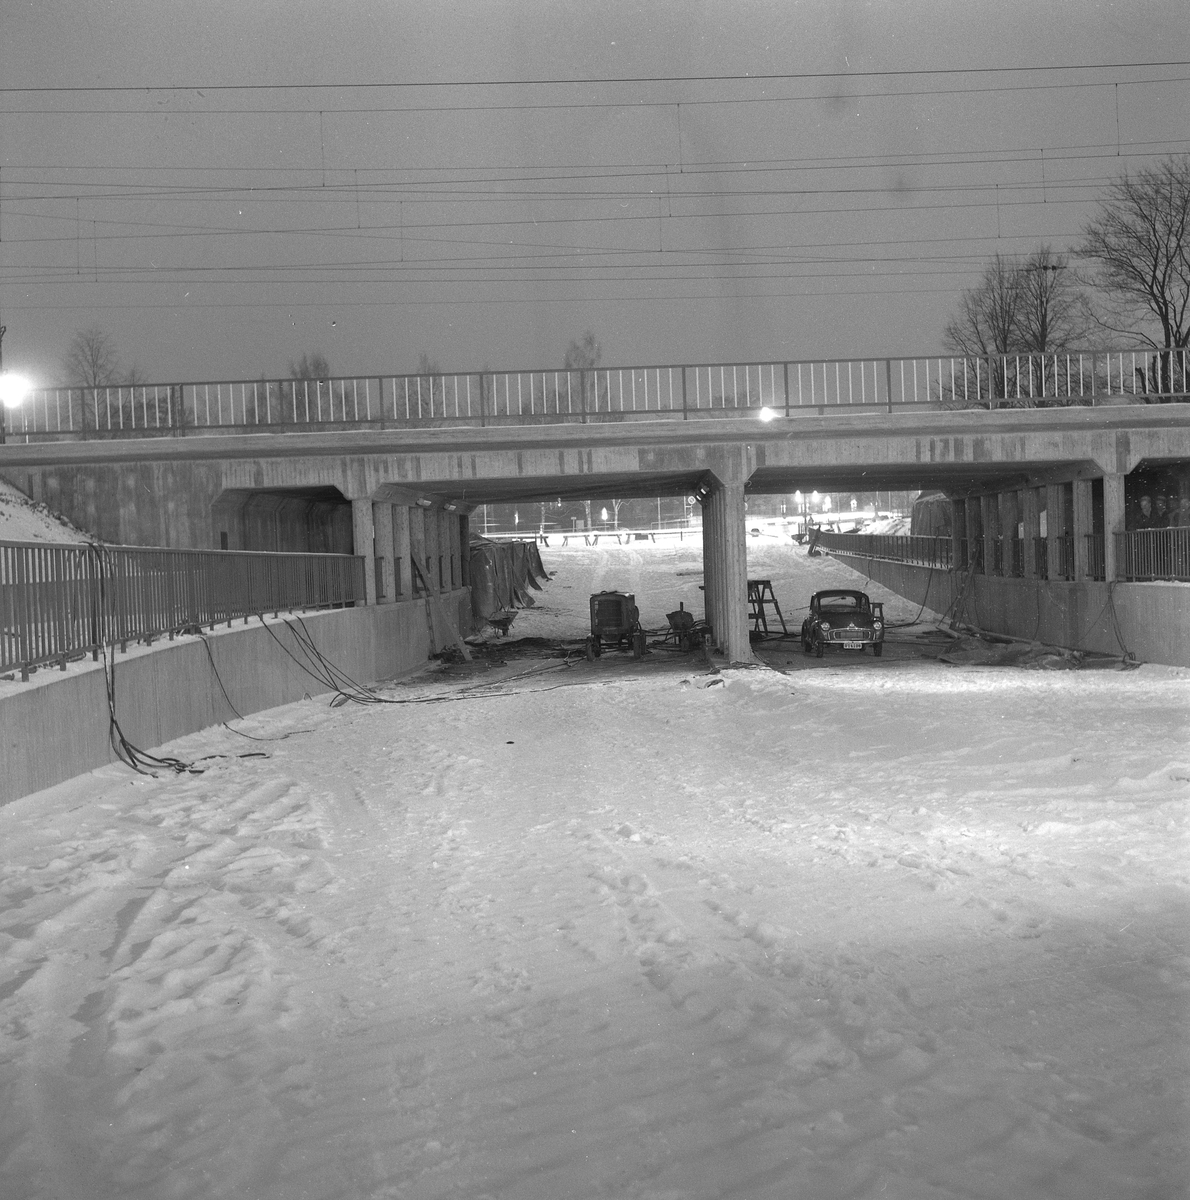 Hagatunneln snart klar. Tunneln som går under järnvägen vid Södra Station.
17 december 1958.